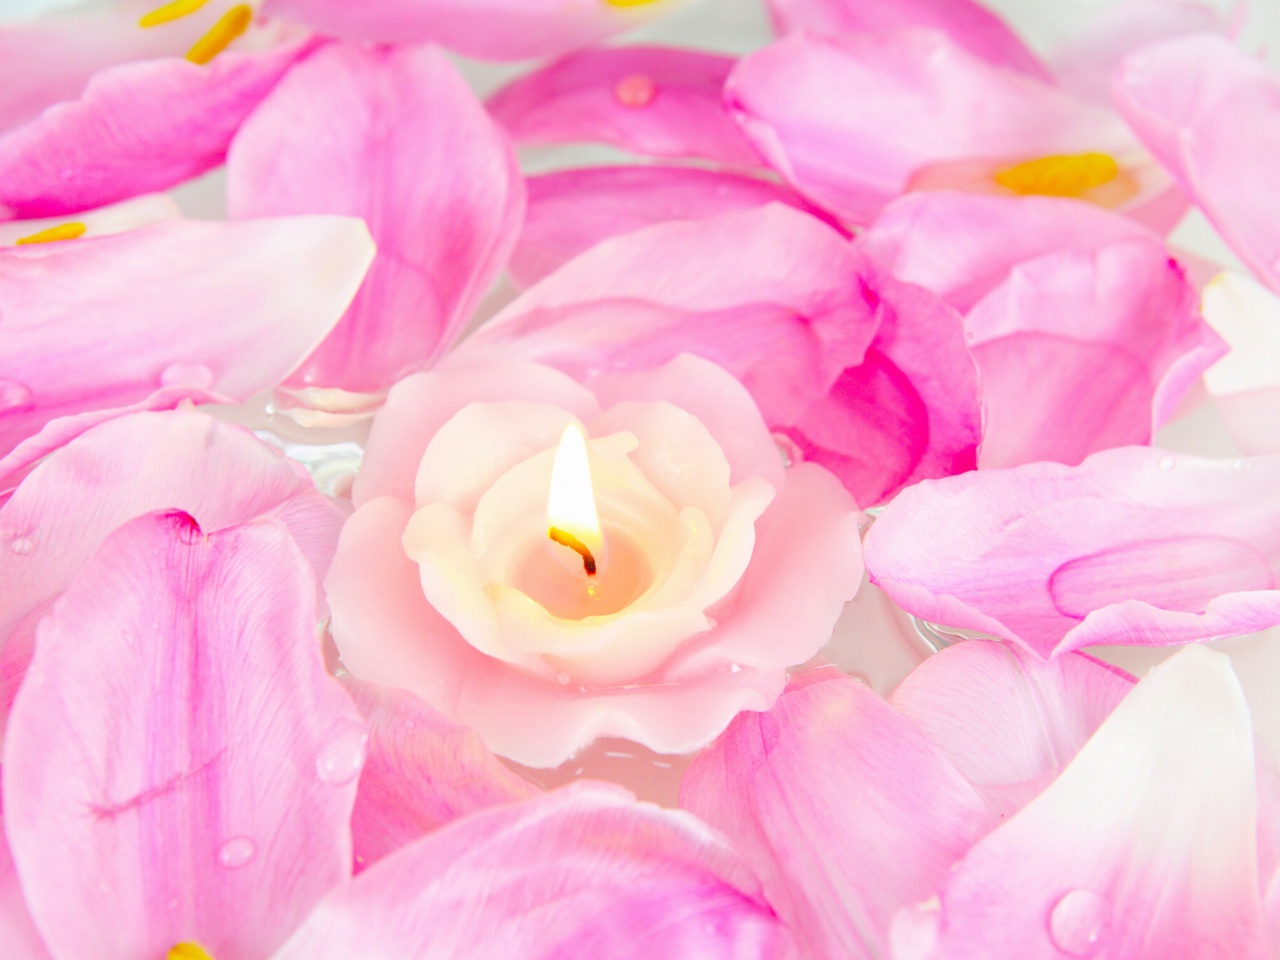 Candle on lotus petals screenshot #1 1280x960